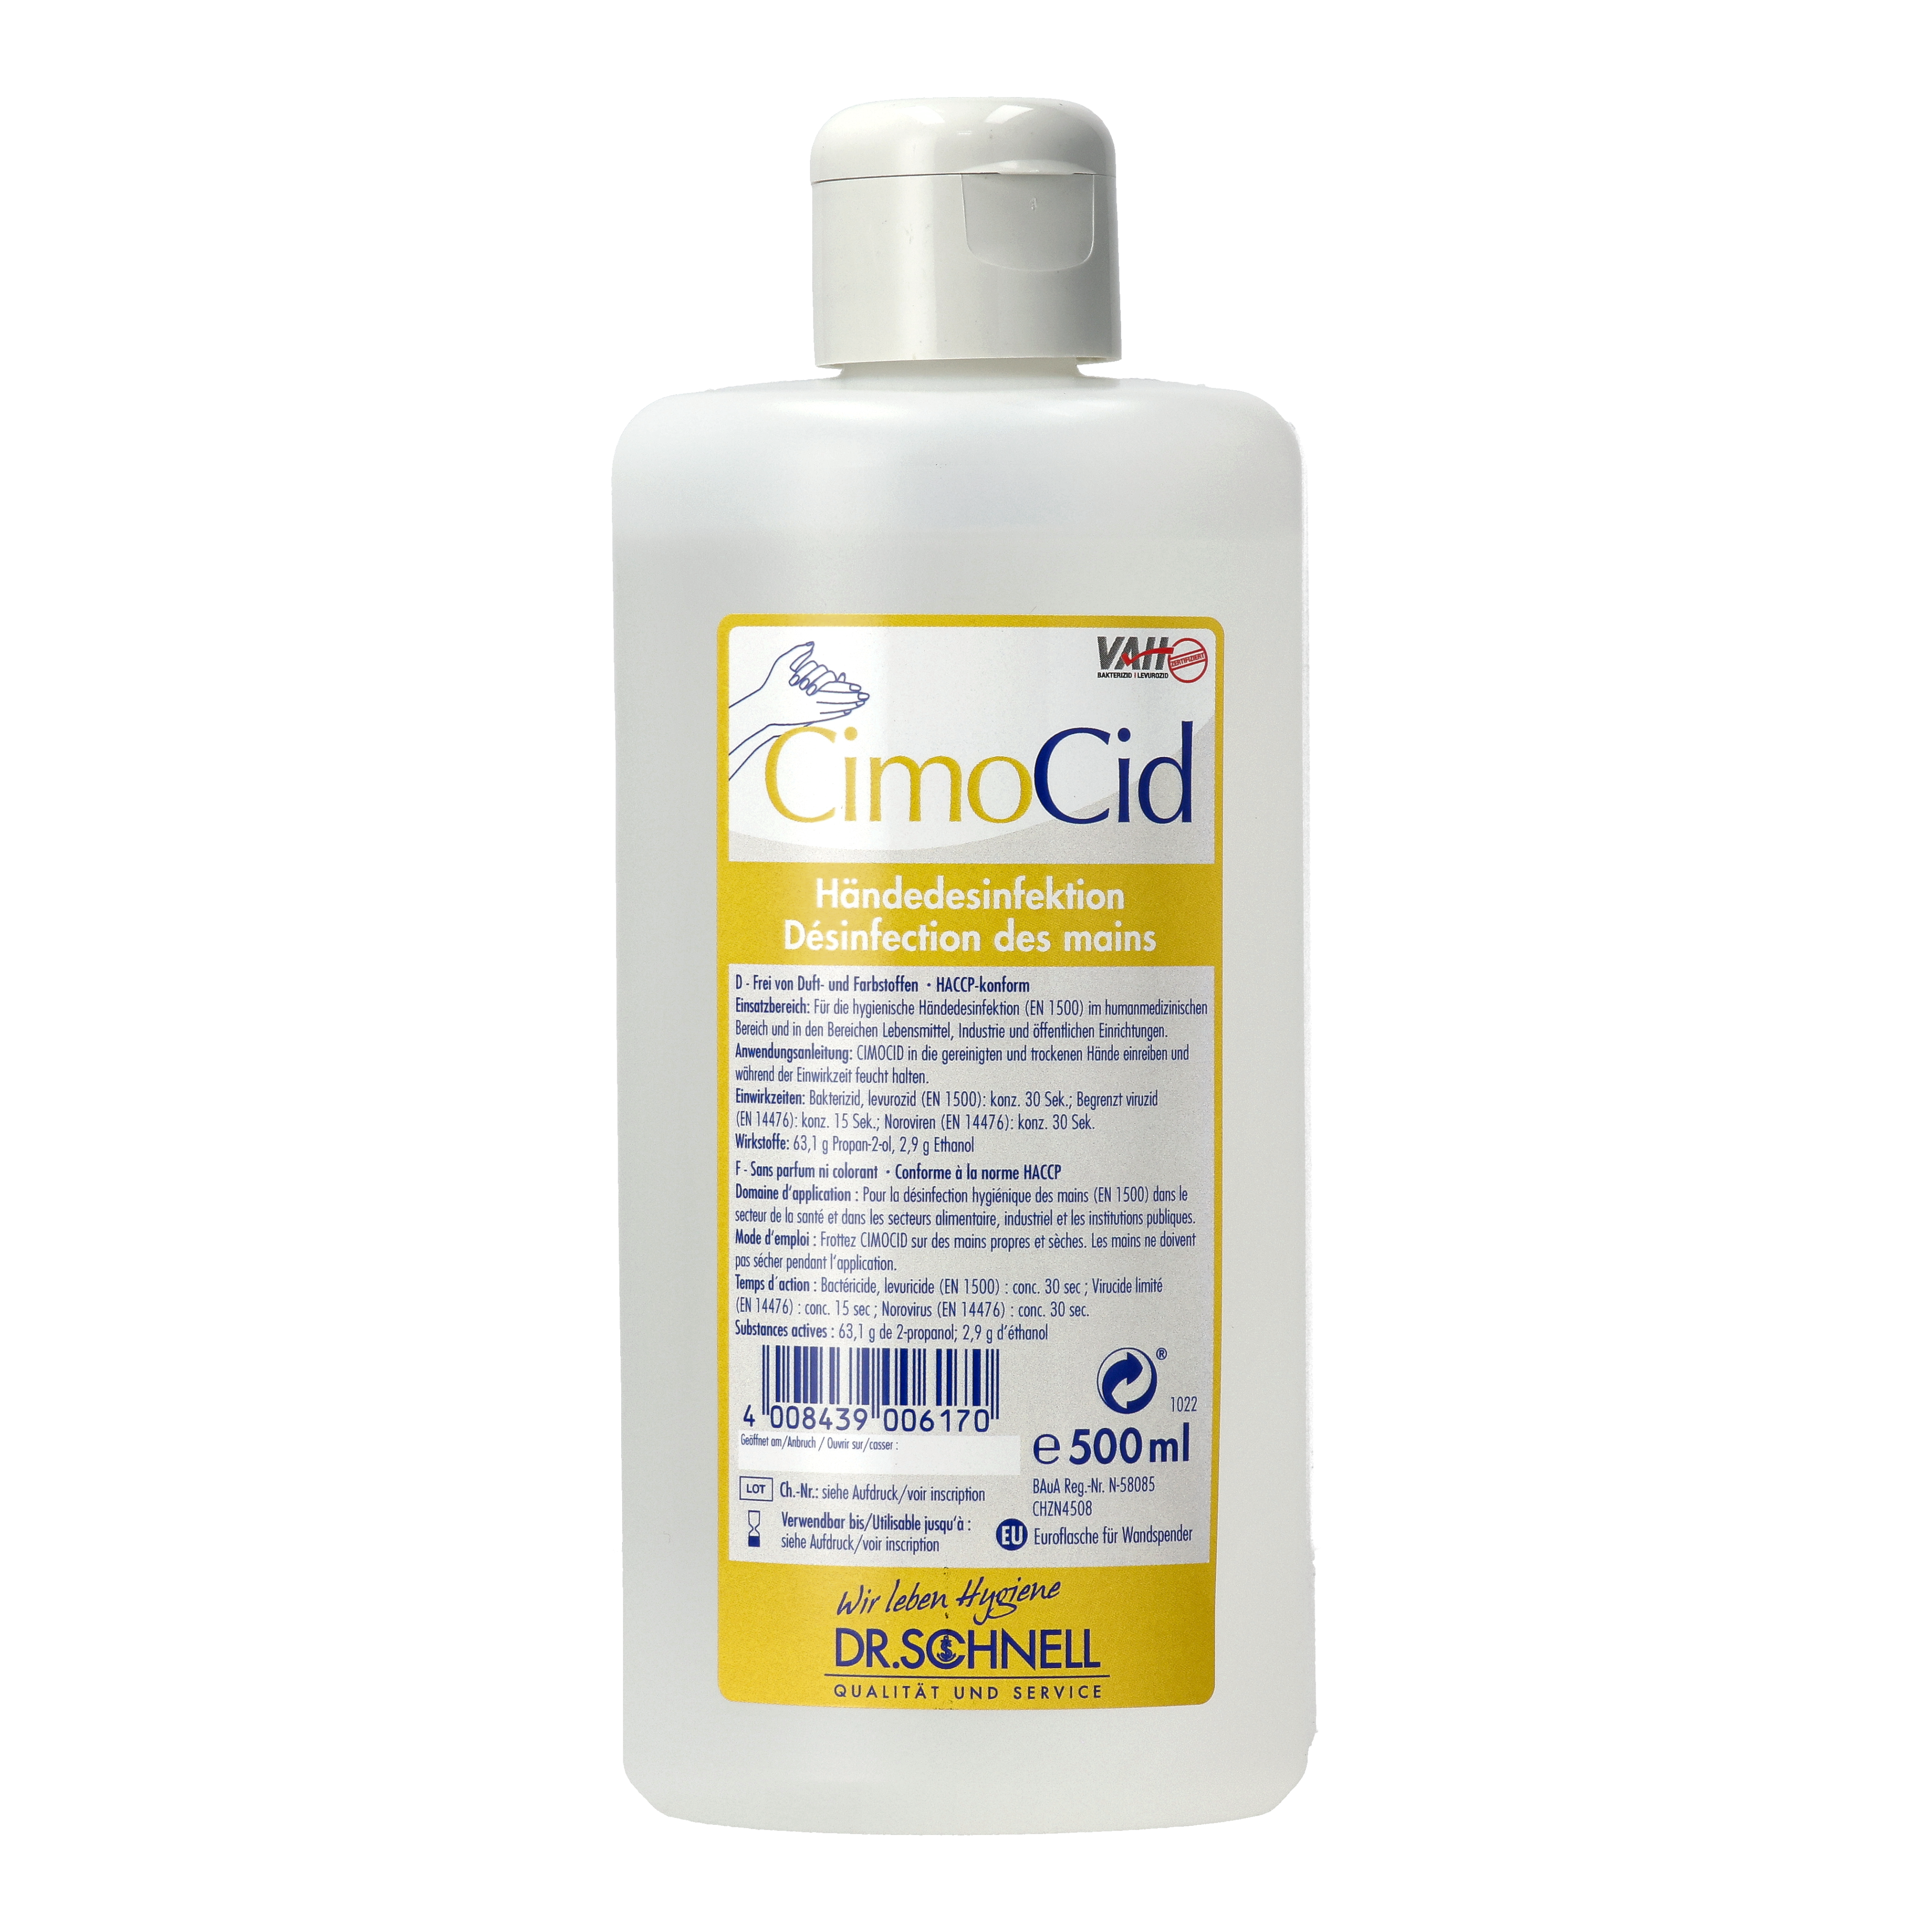 Dr. Schnell CimoCid Händedesinfektionsmittel (Euroflasche) - 500 ml